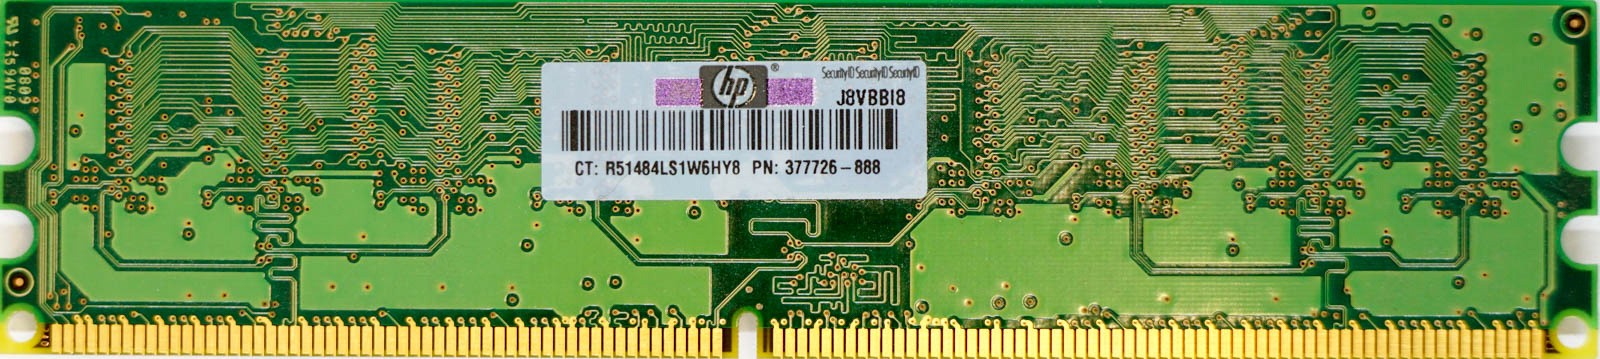 HP (377726-888) - 1GB PC2-5300U (DDR2-667Mhz, 1RX8)